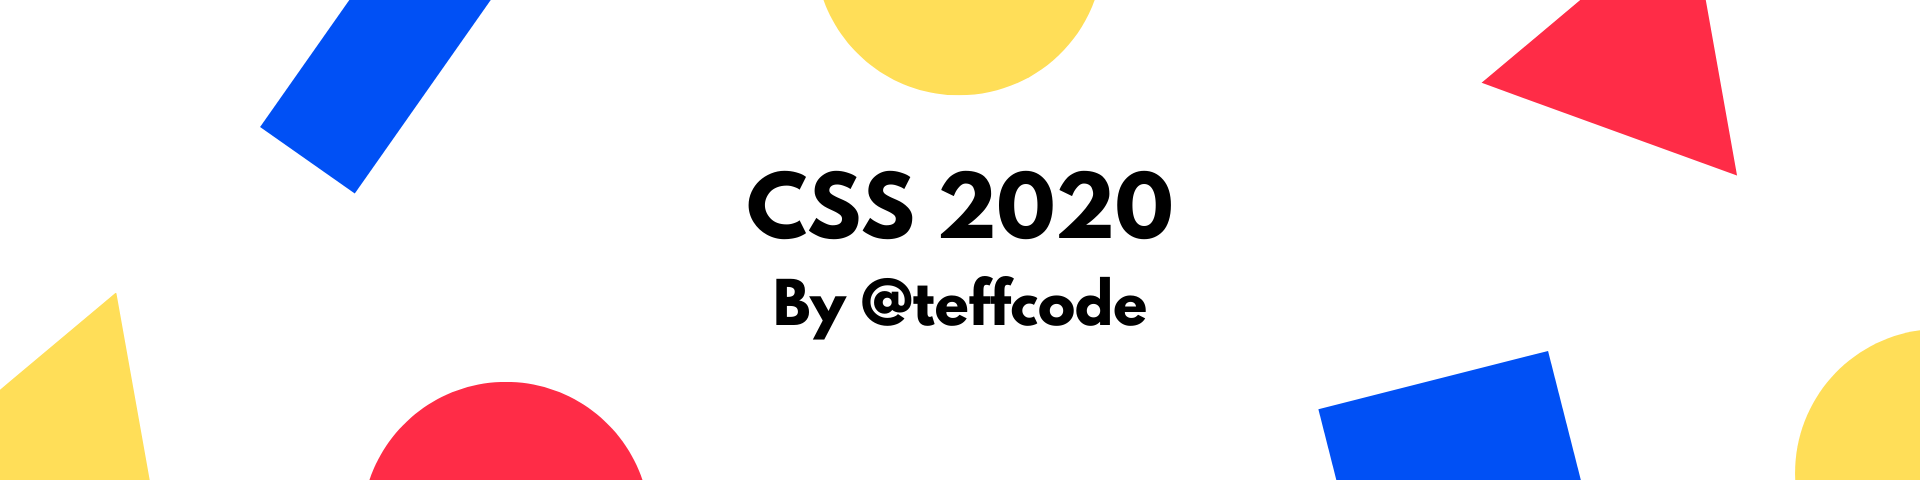 CSS 2020